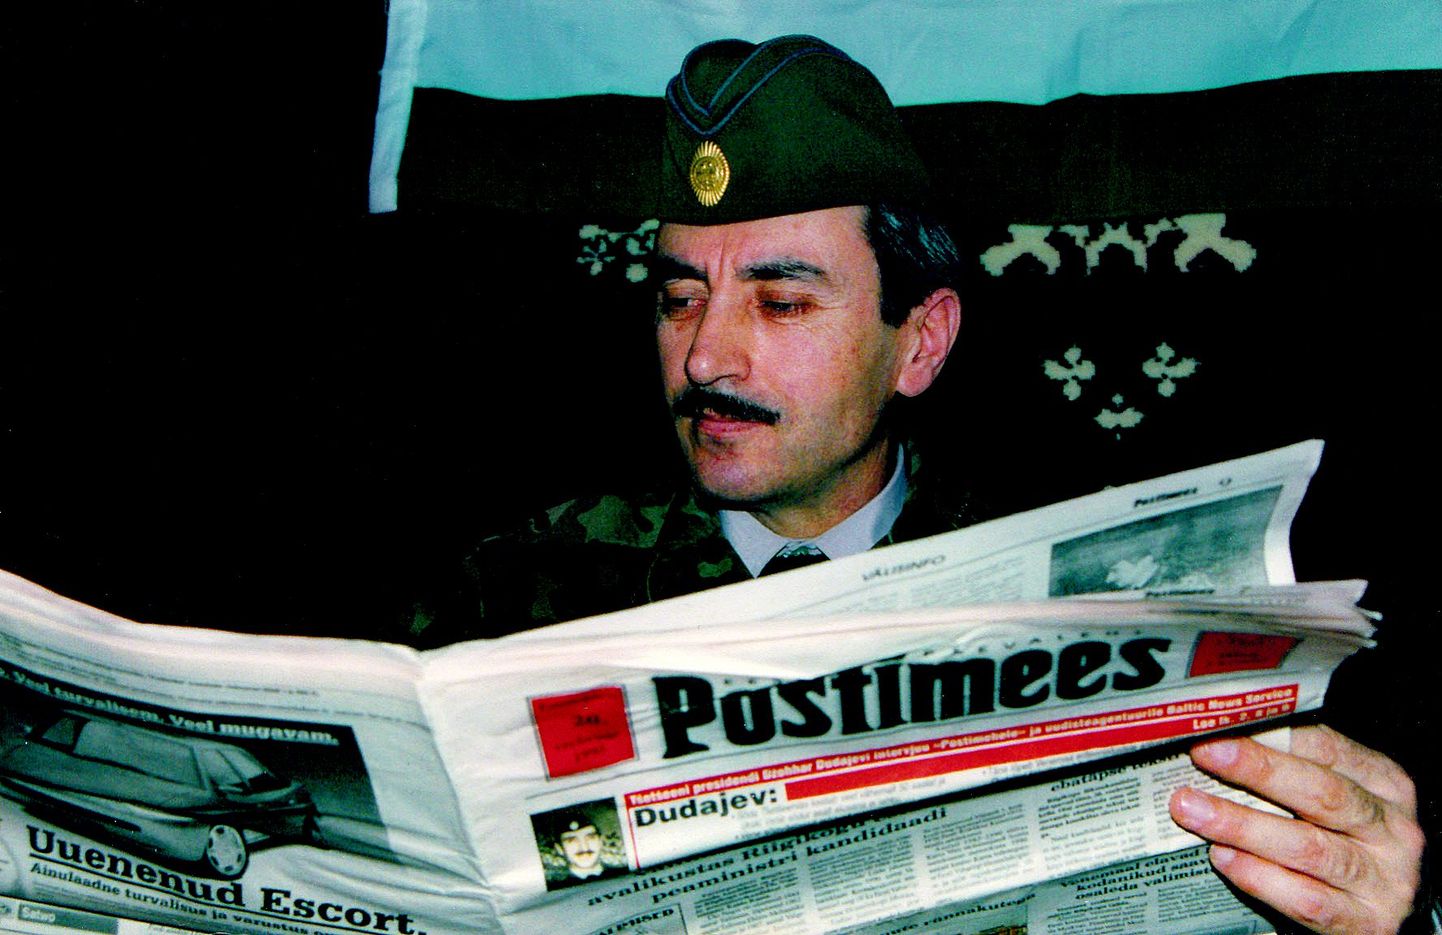 Tšetšeenide esimene president Džohhar Dudajev 1995. aastal lugemas Postimeest.